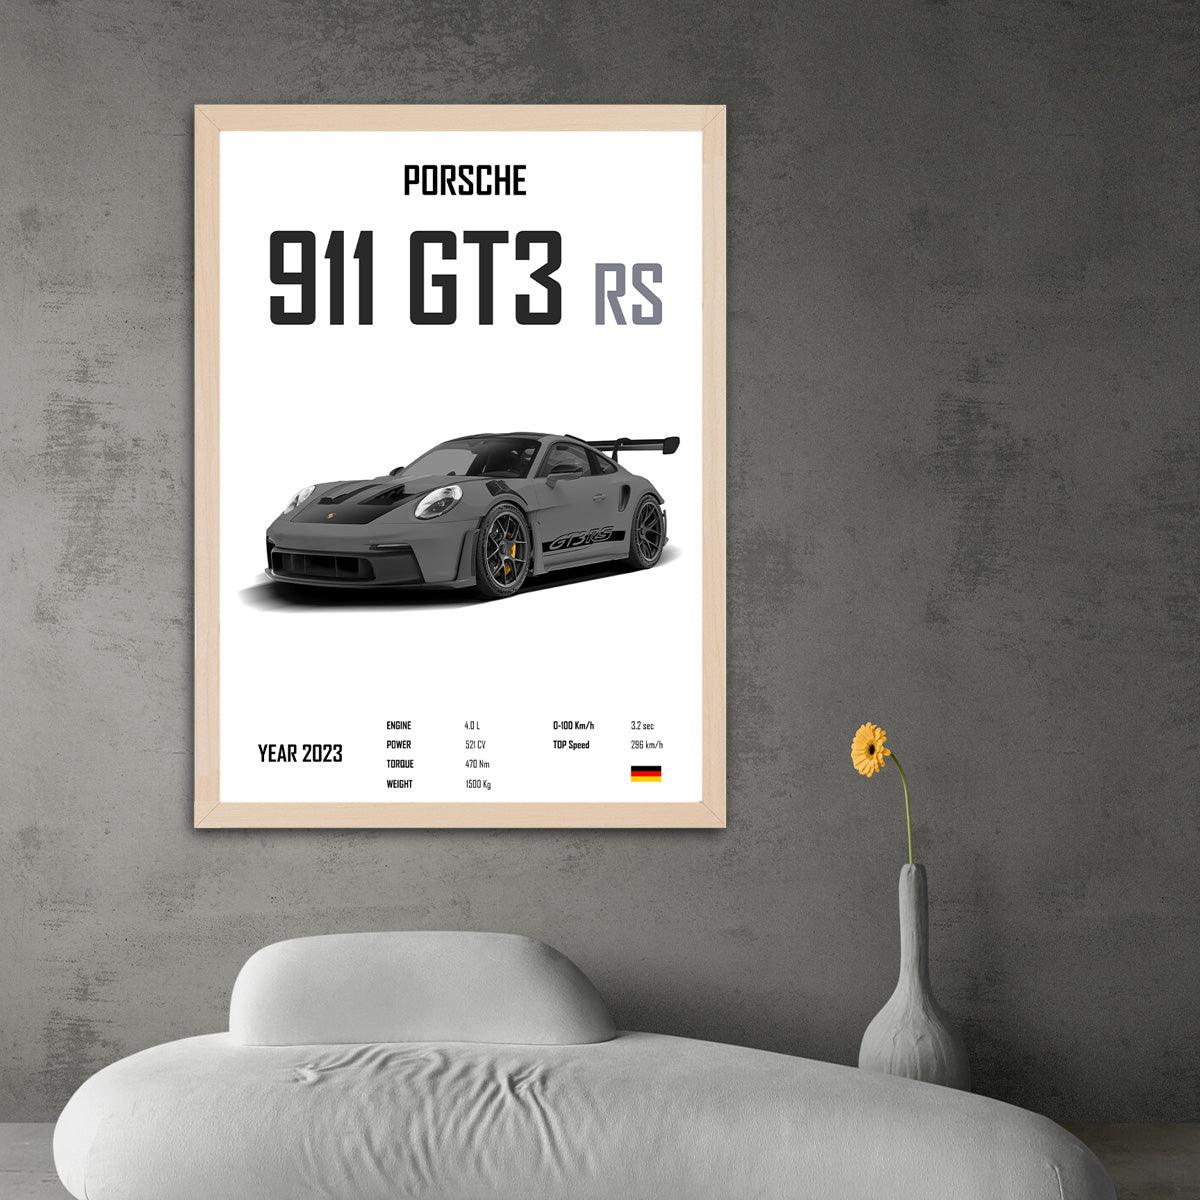 Porsche 911 GT3 RS Grey - HD Metal Print - PixMagic